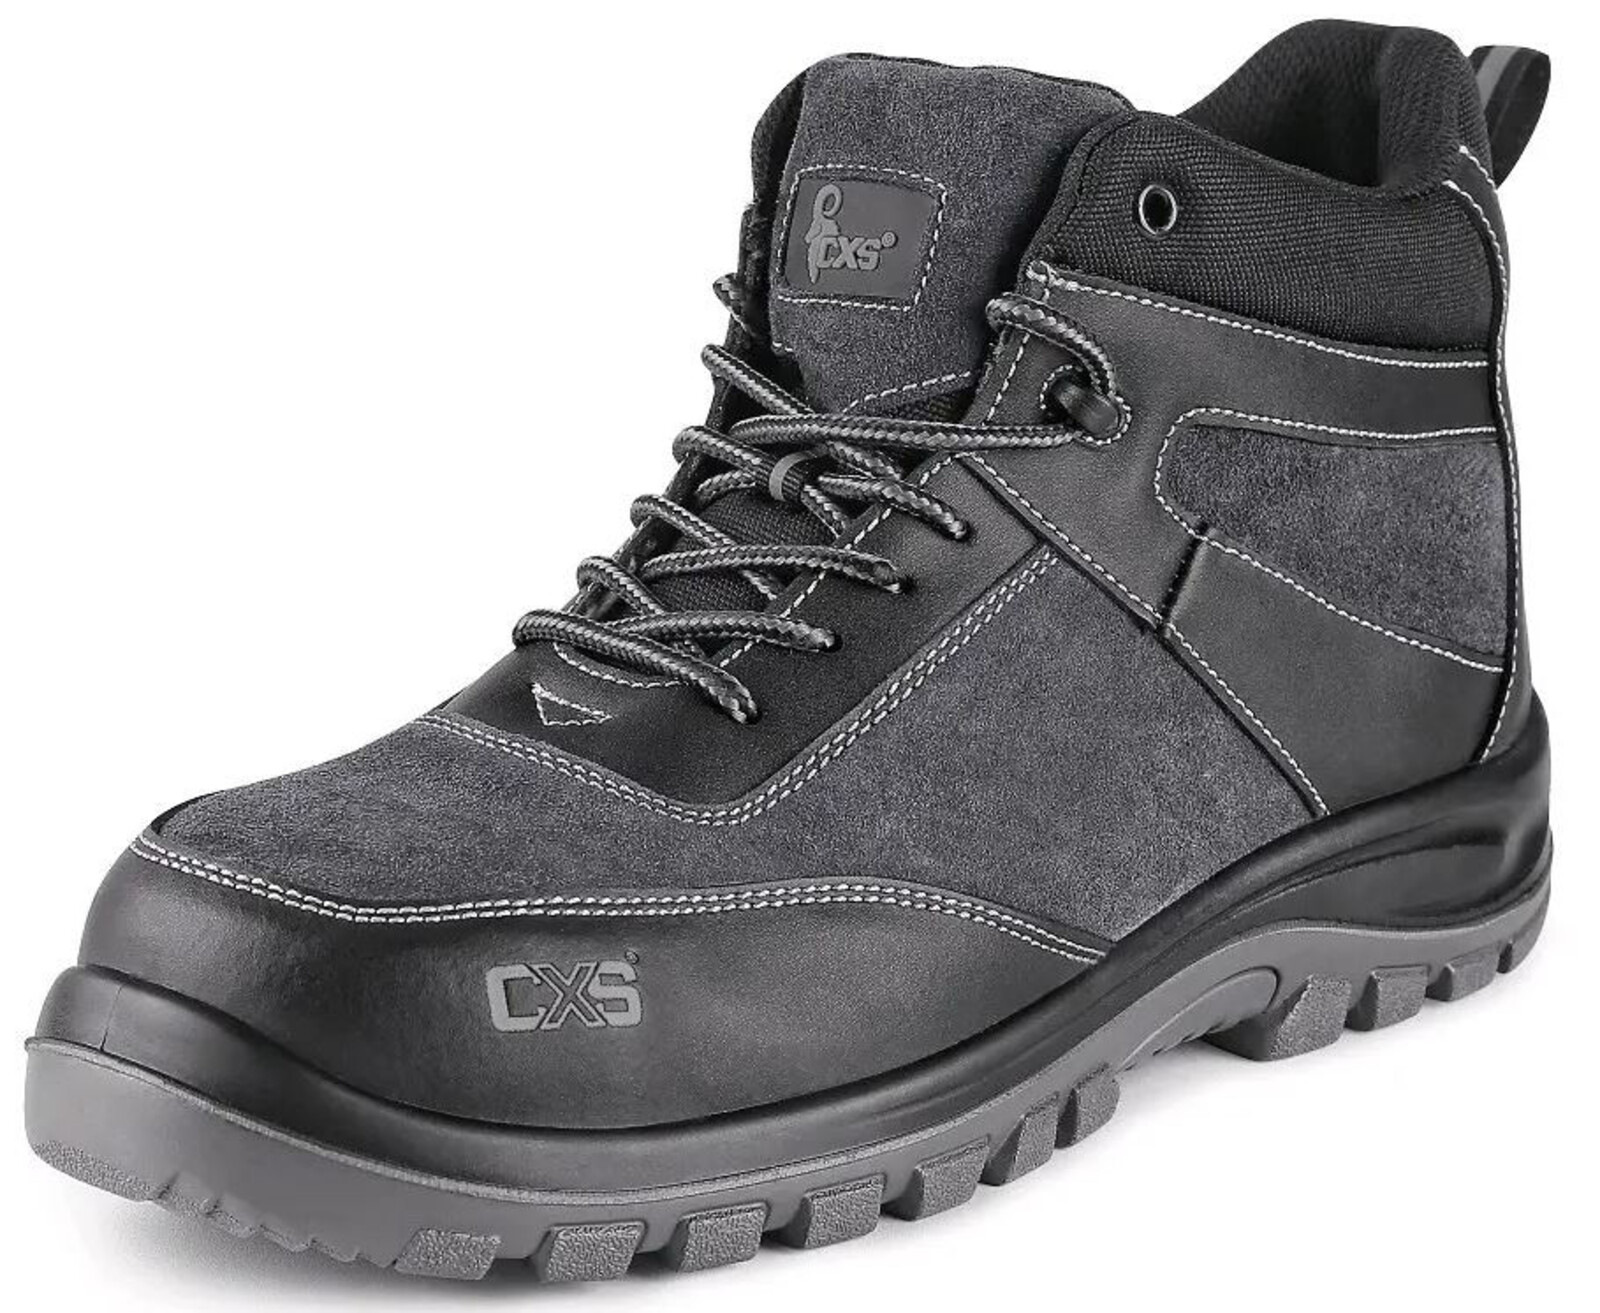 Pracovná členková obuv CXS Profit Win O1 FO SRC - veľkosť: 42, farba: čierna/sivá